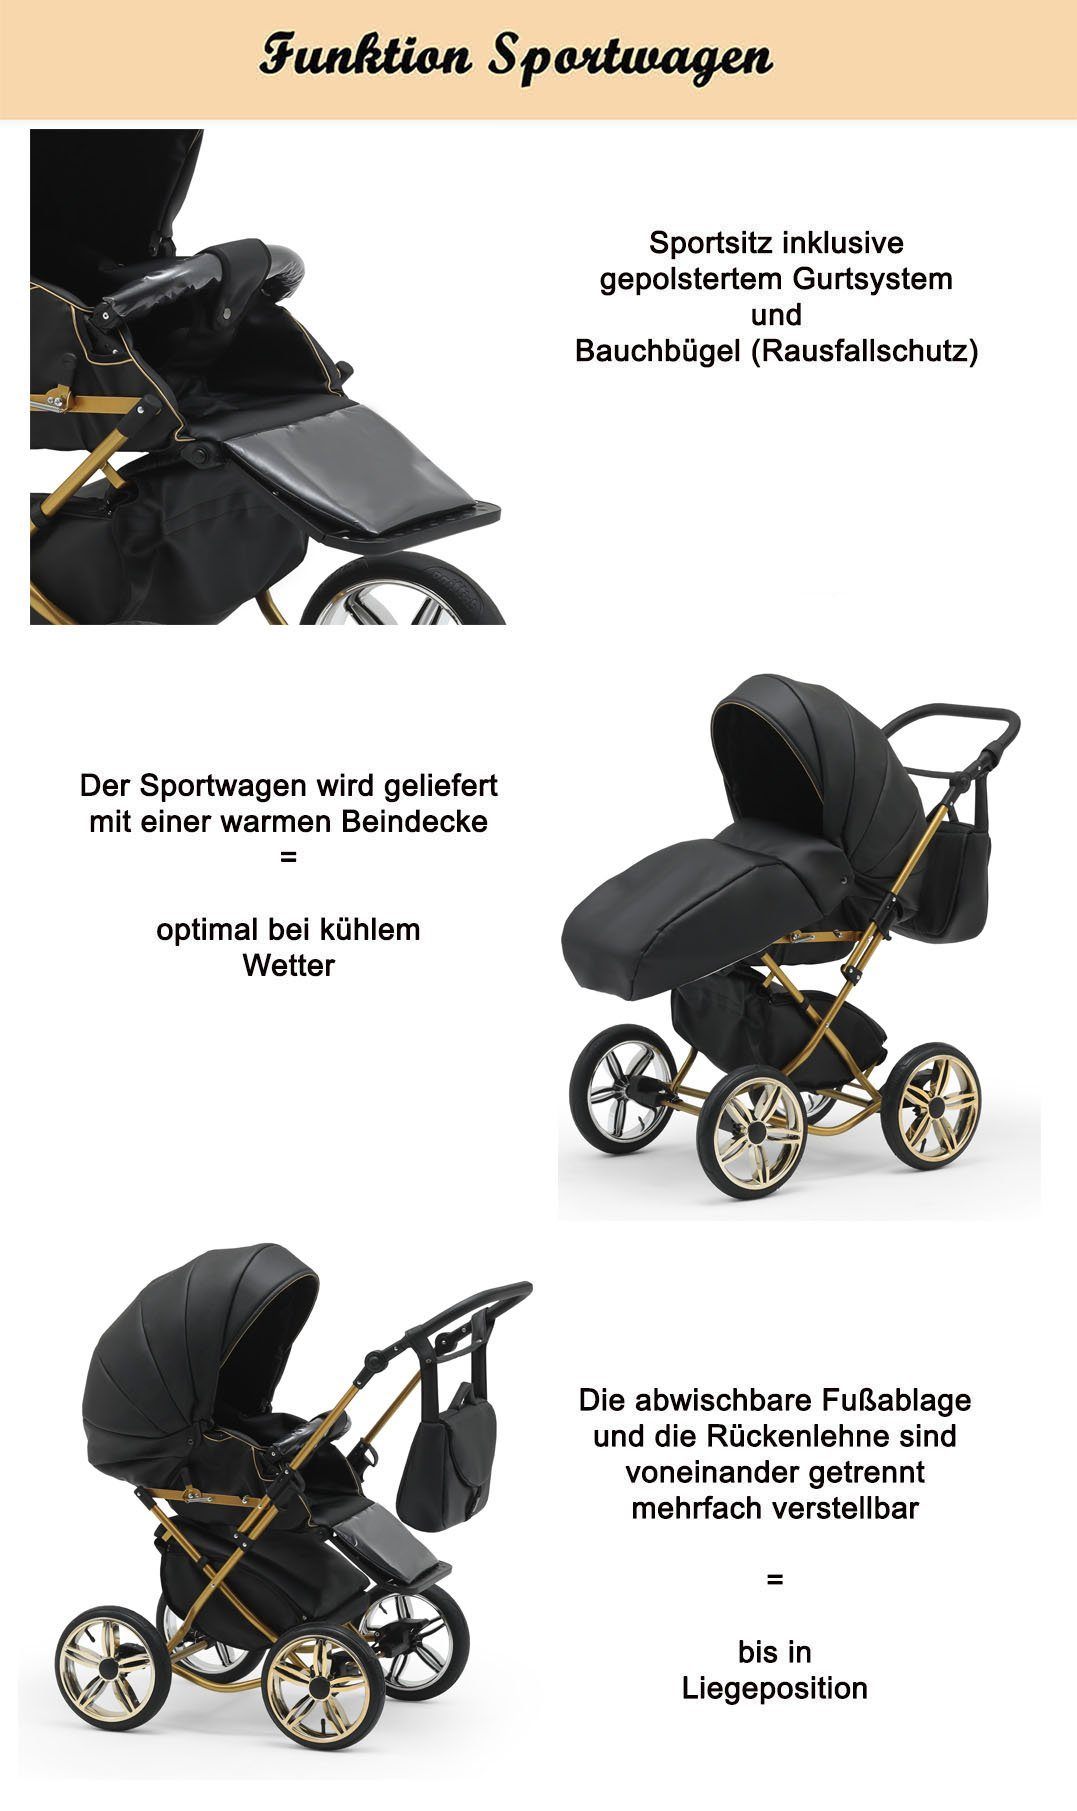 - in Beige in Teile 10 babies-on-wheels 3 Designs Kombi-Kinderwagen 1 Autositz inkl. - Sorento 13